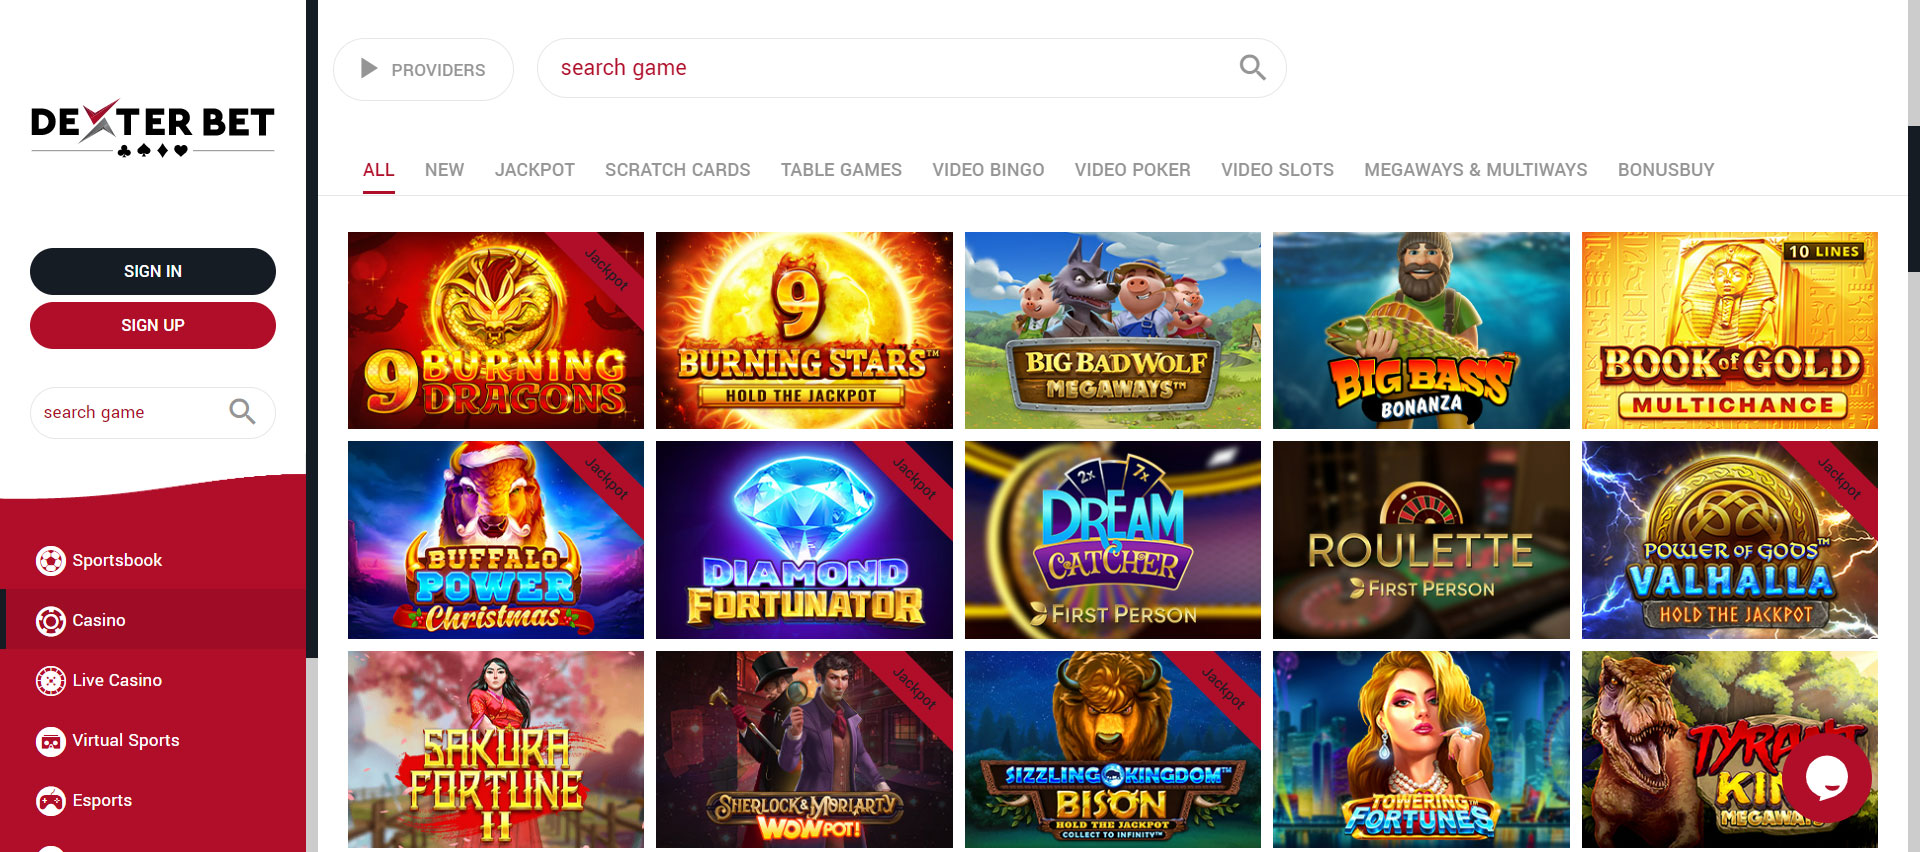 DexterBet Casino Slot Games